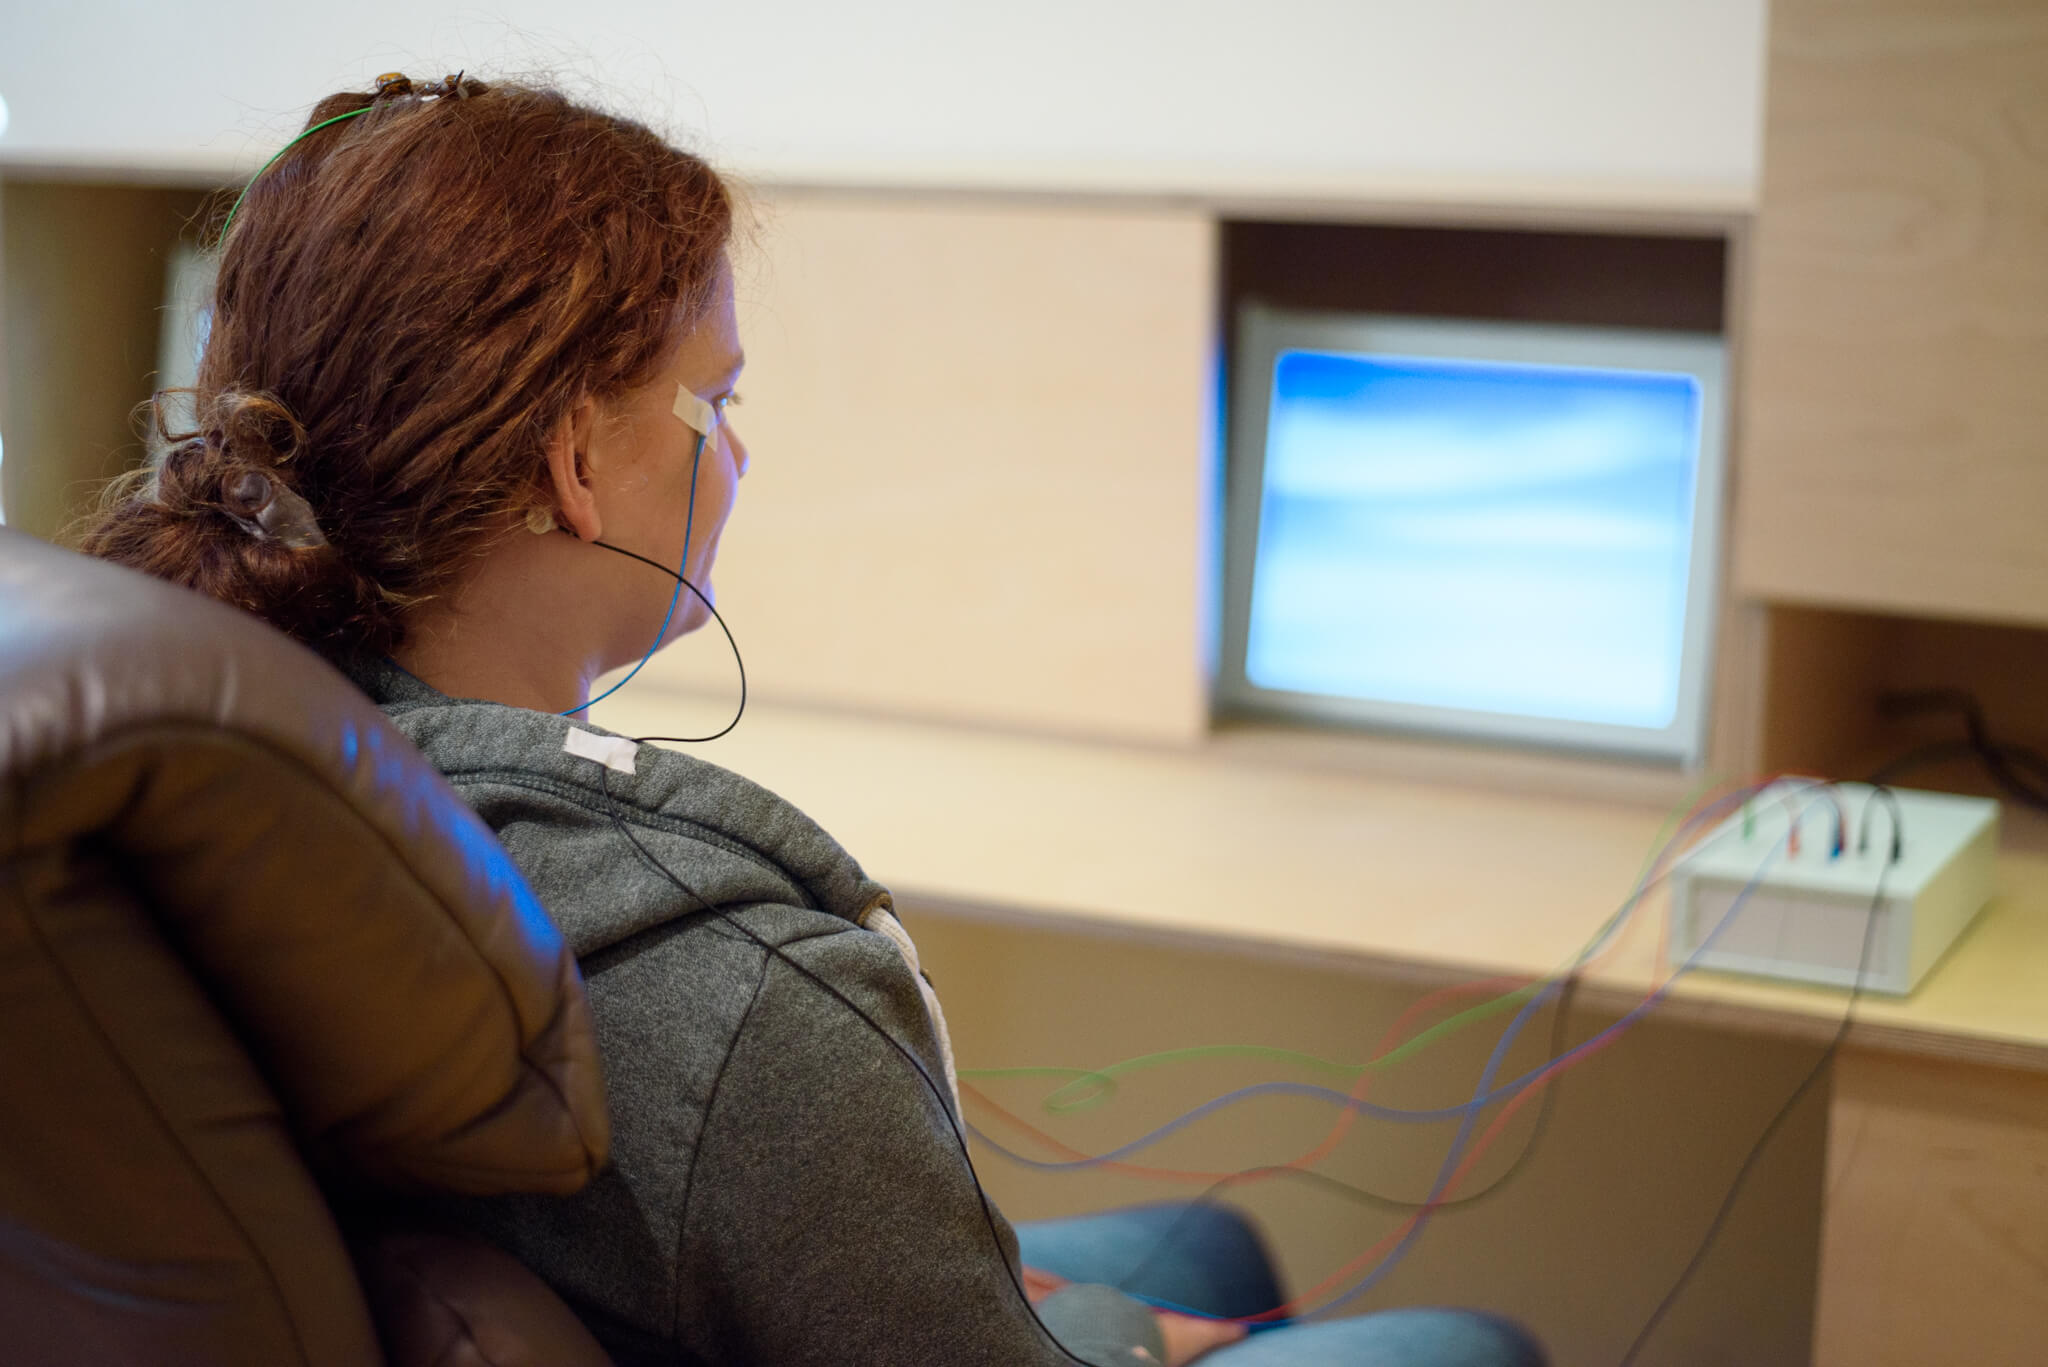 Eine Frau sitzt in einem Sessel vor einem Computerbildschirm. Am ihrem Kopf sind Elektroden befestigt, dere Kabel zu einem hellen Kästchen neben com Computer führen.